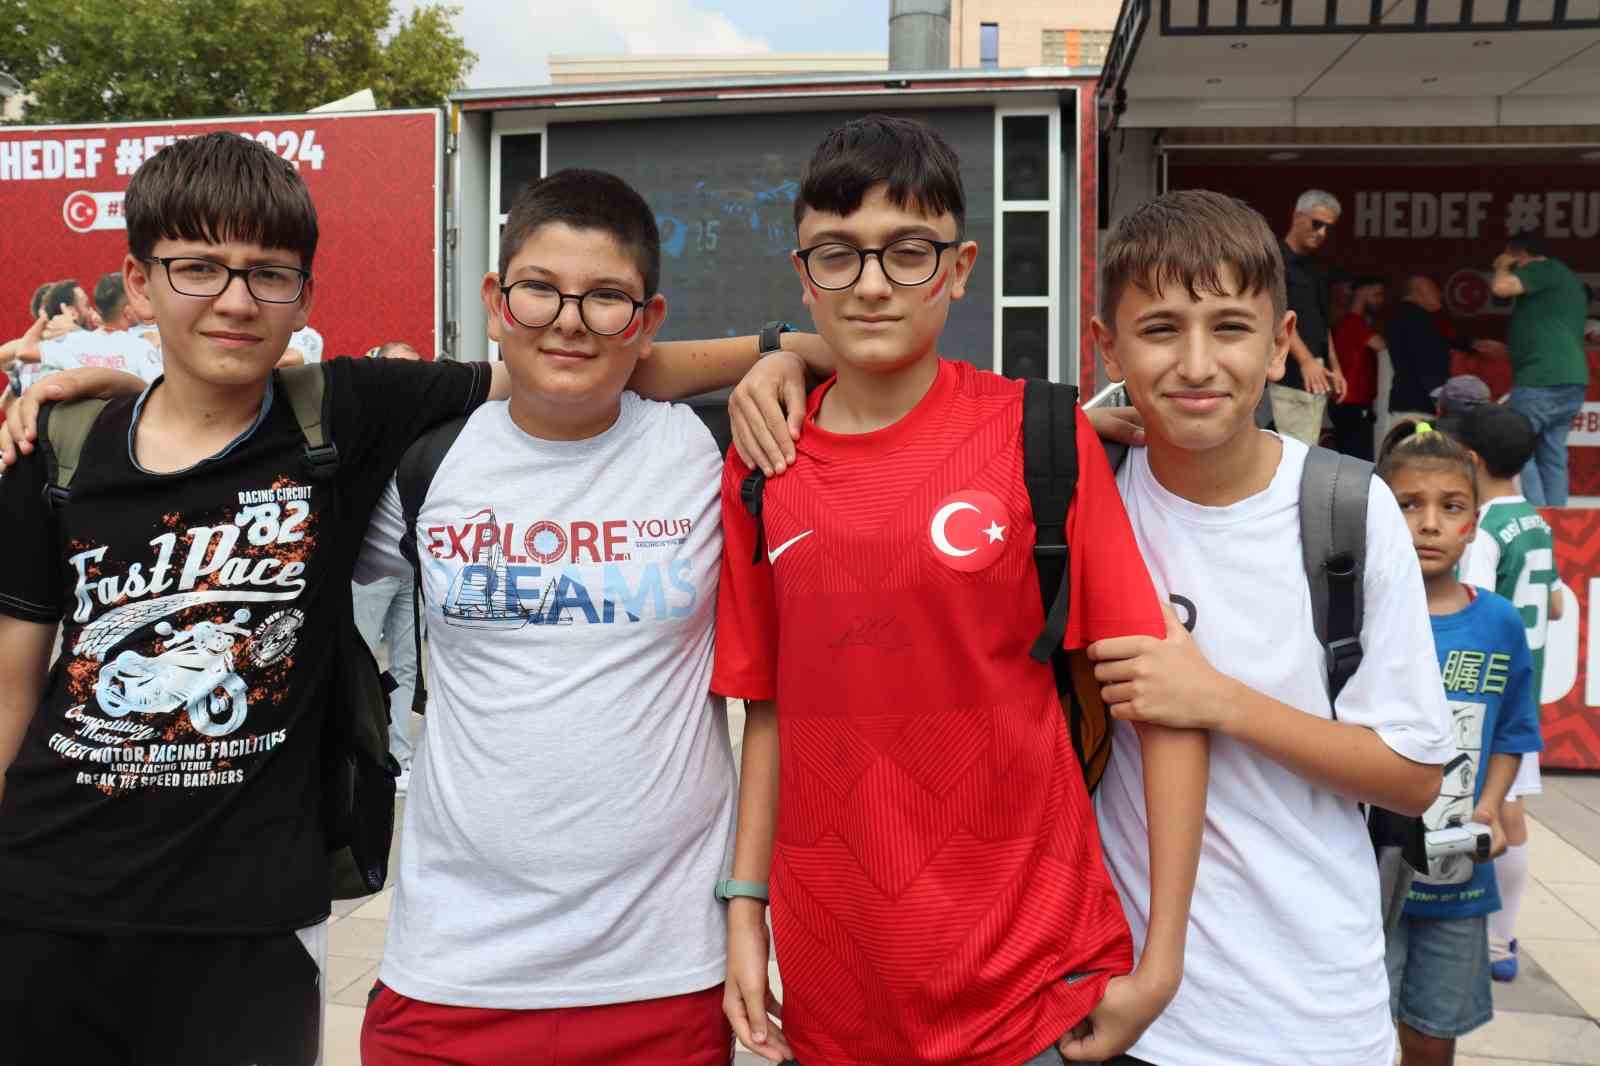 Türkiye Futbol Federasyonu valilik önündeki etkinliklerine devam ediyor